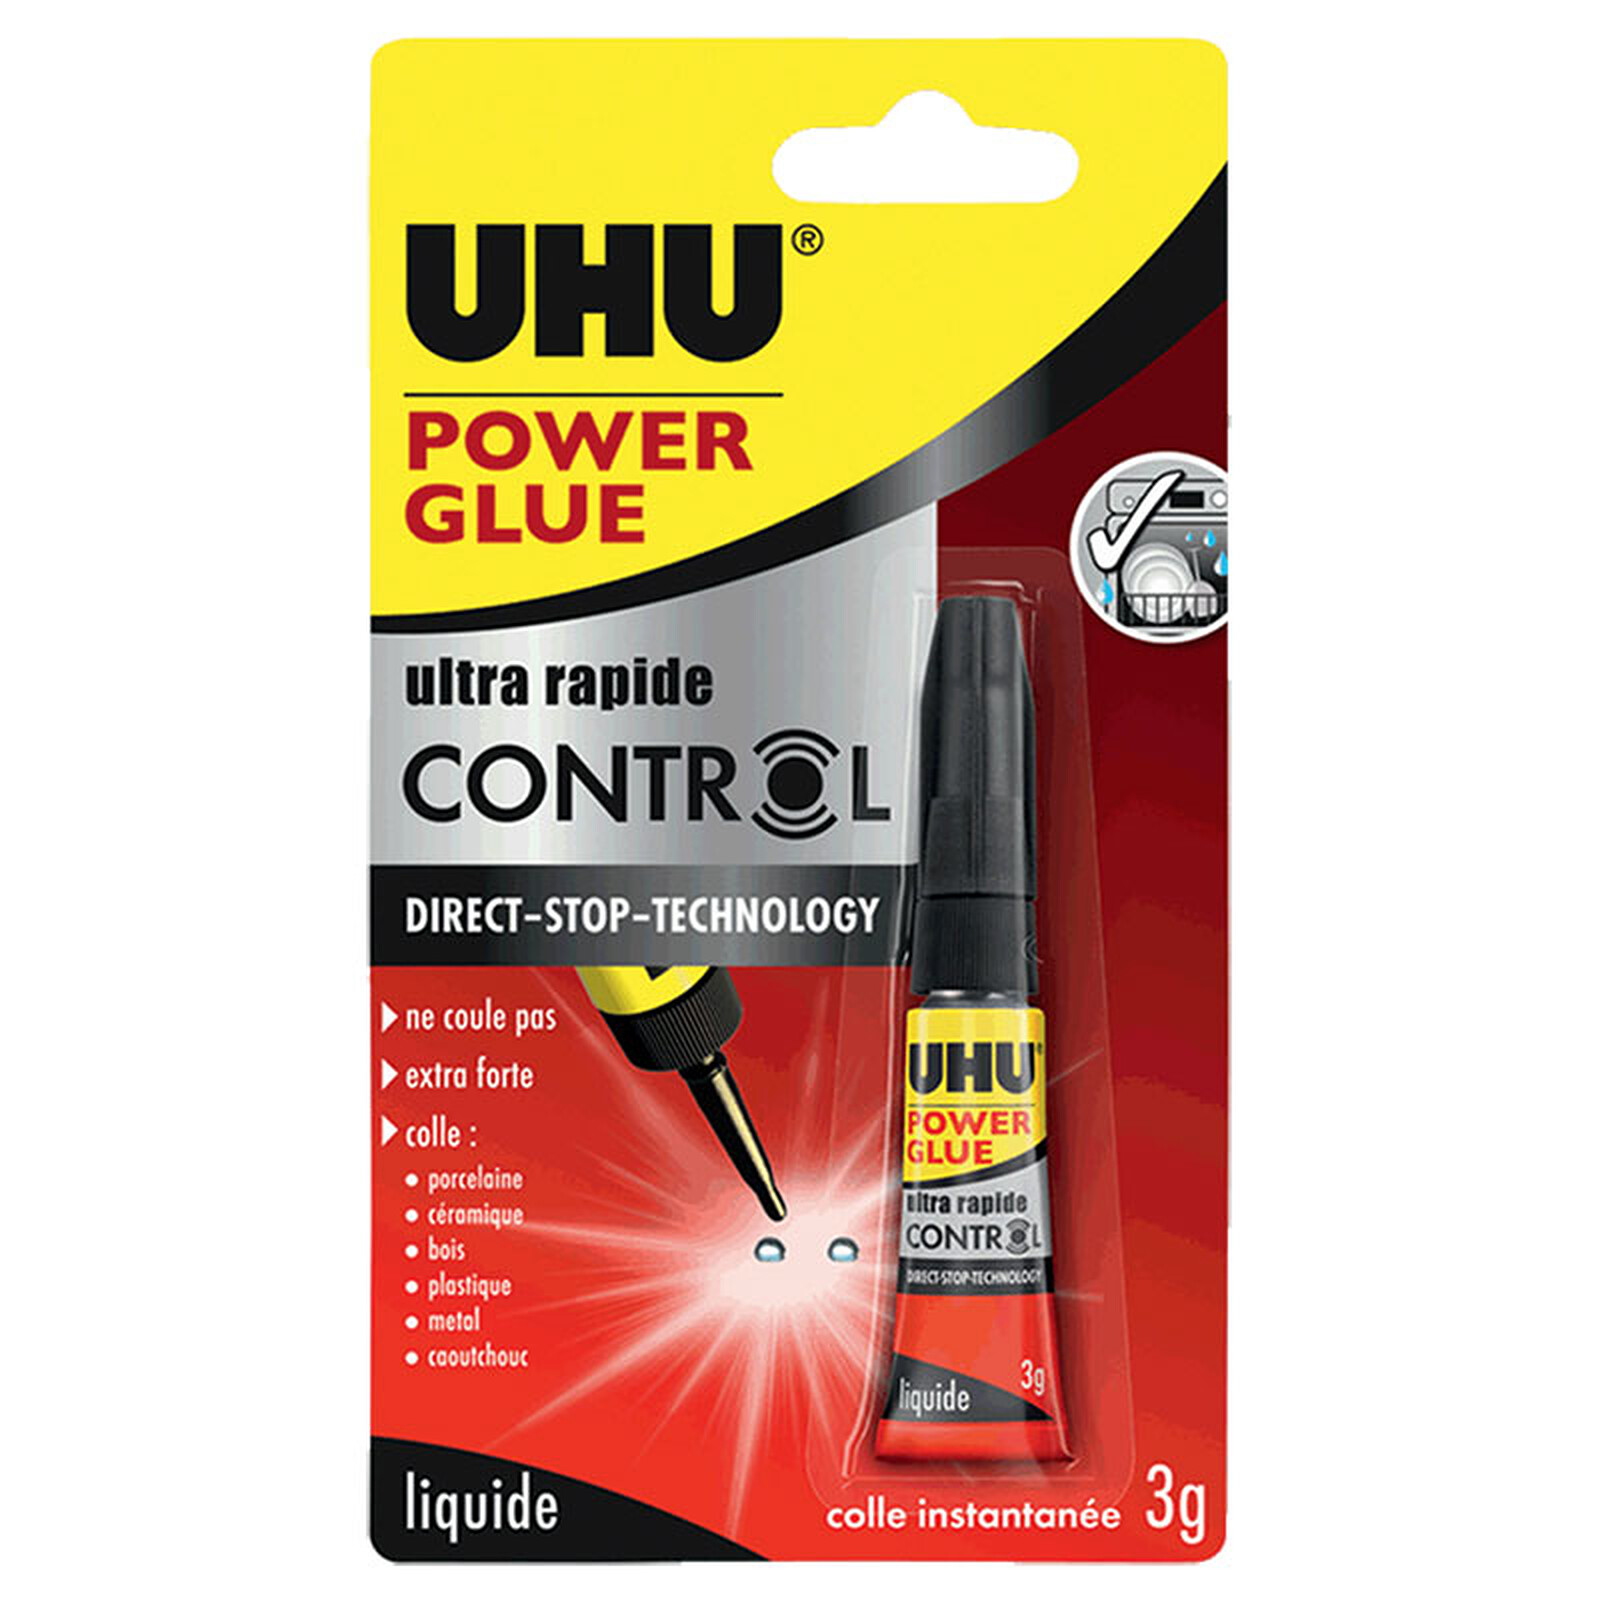 UHU Power Glue Liquide Control - - LDLC